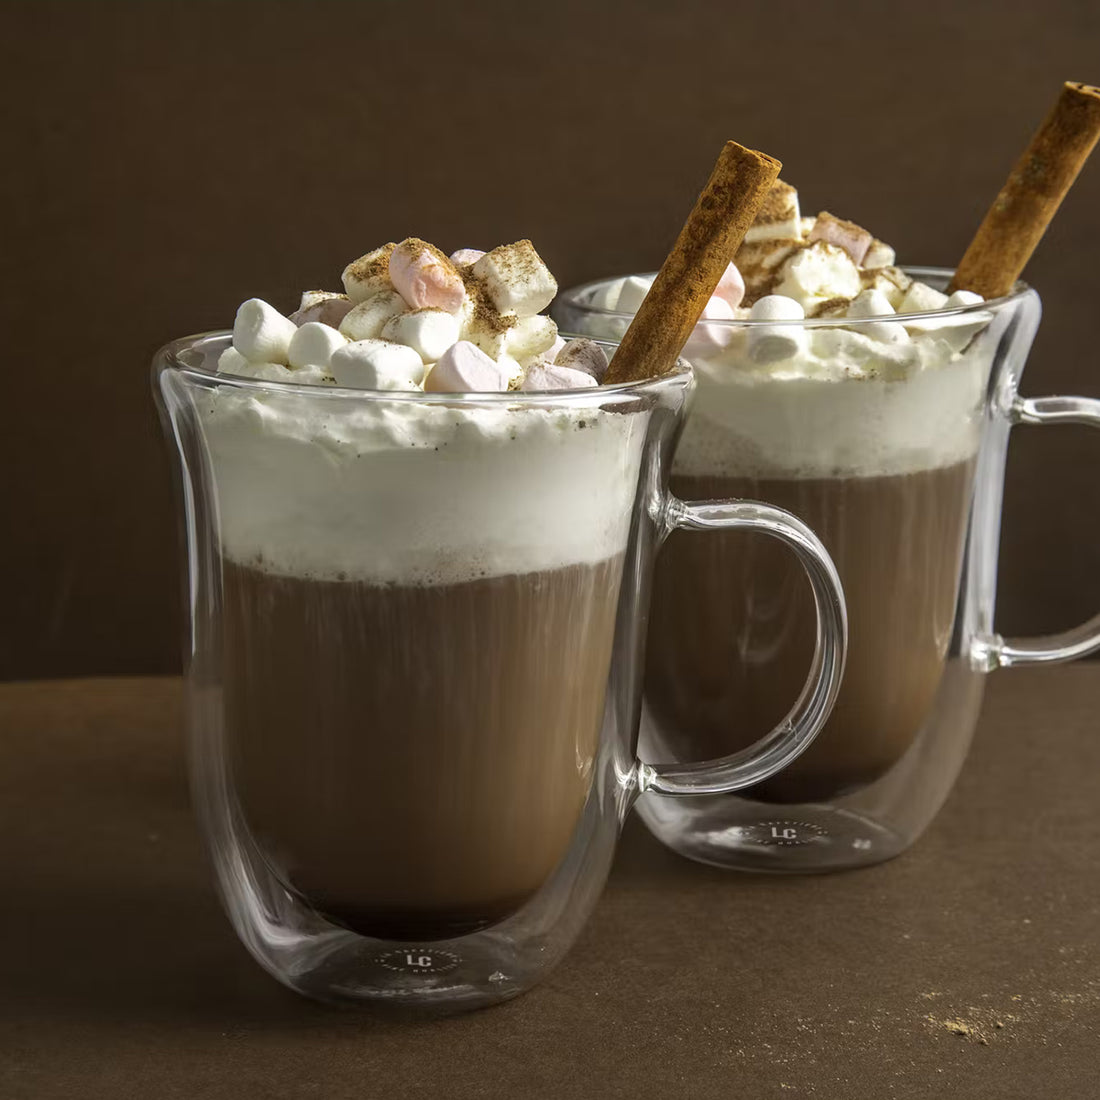 La Cafetière, La Cafetière Double Walled Hot Chocolate Mug 2 Cup Set, Redber Coffee